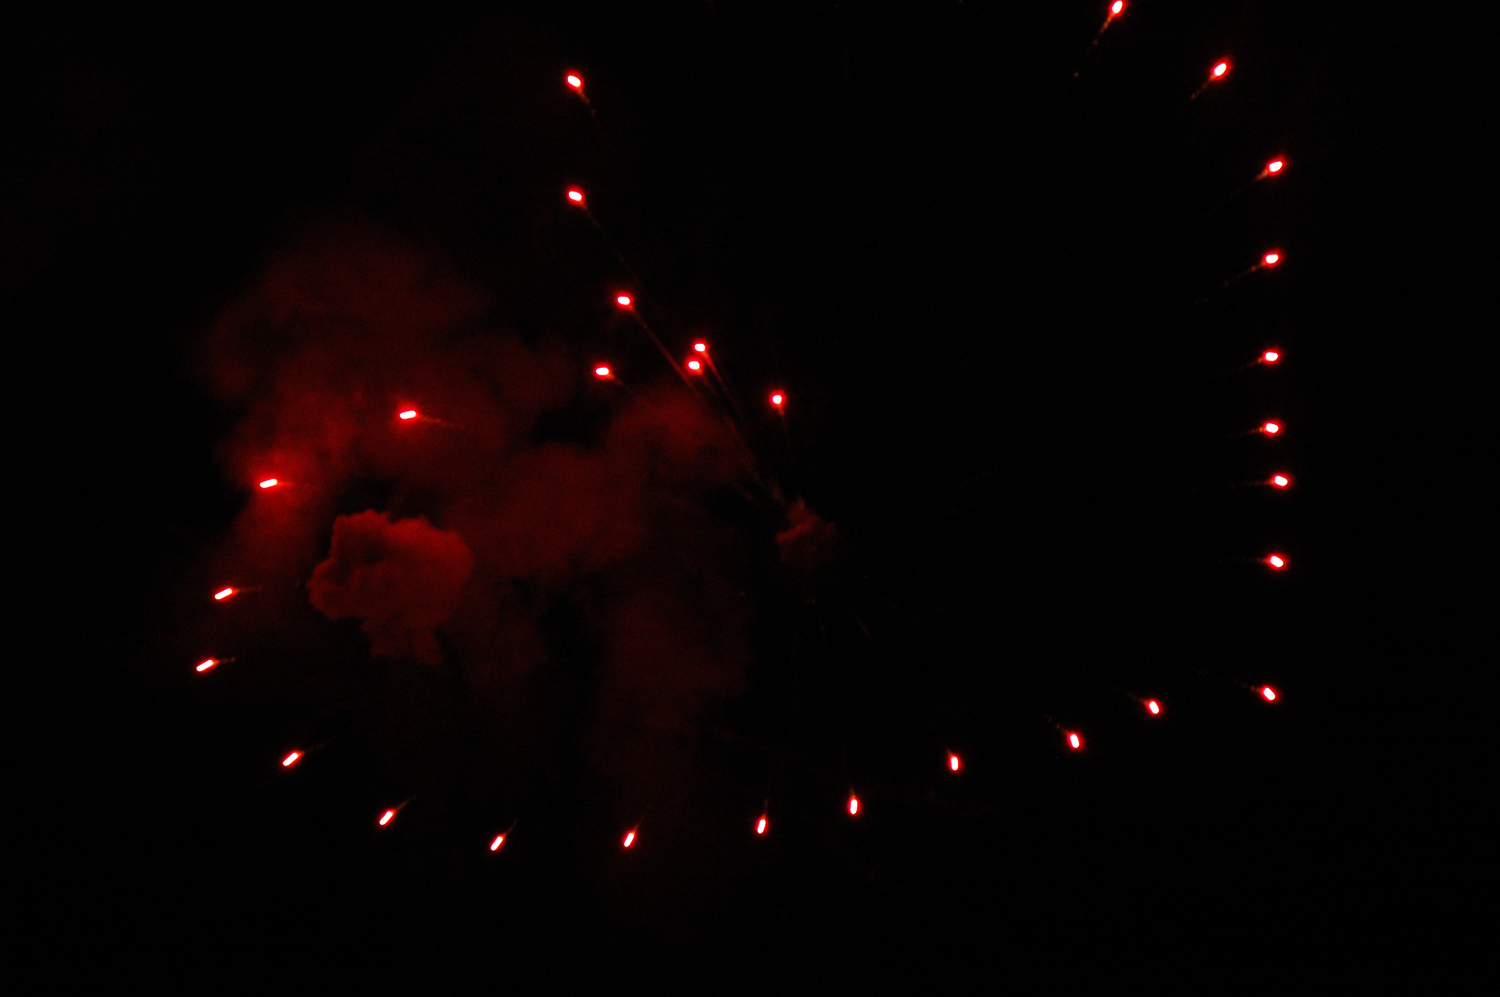 Tamamura Fireworks from japan ( keren )